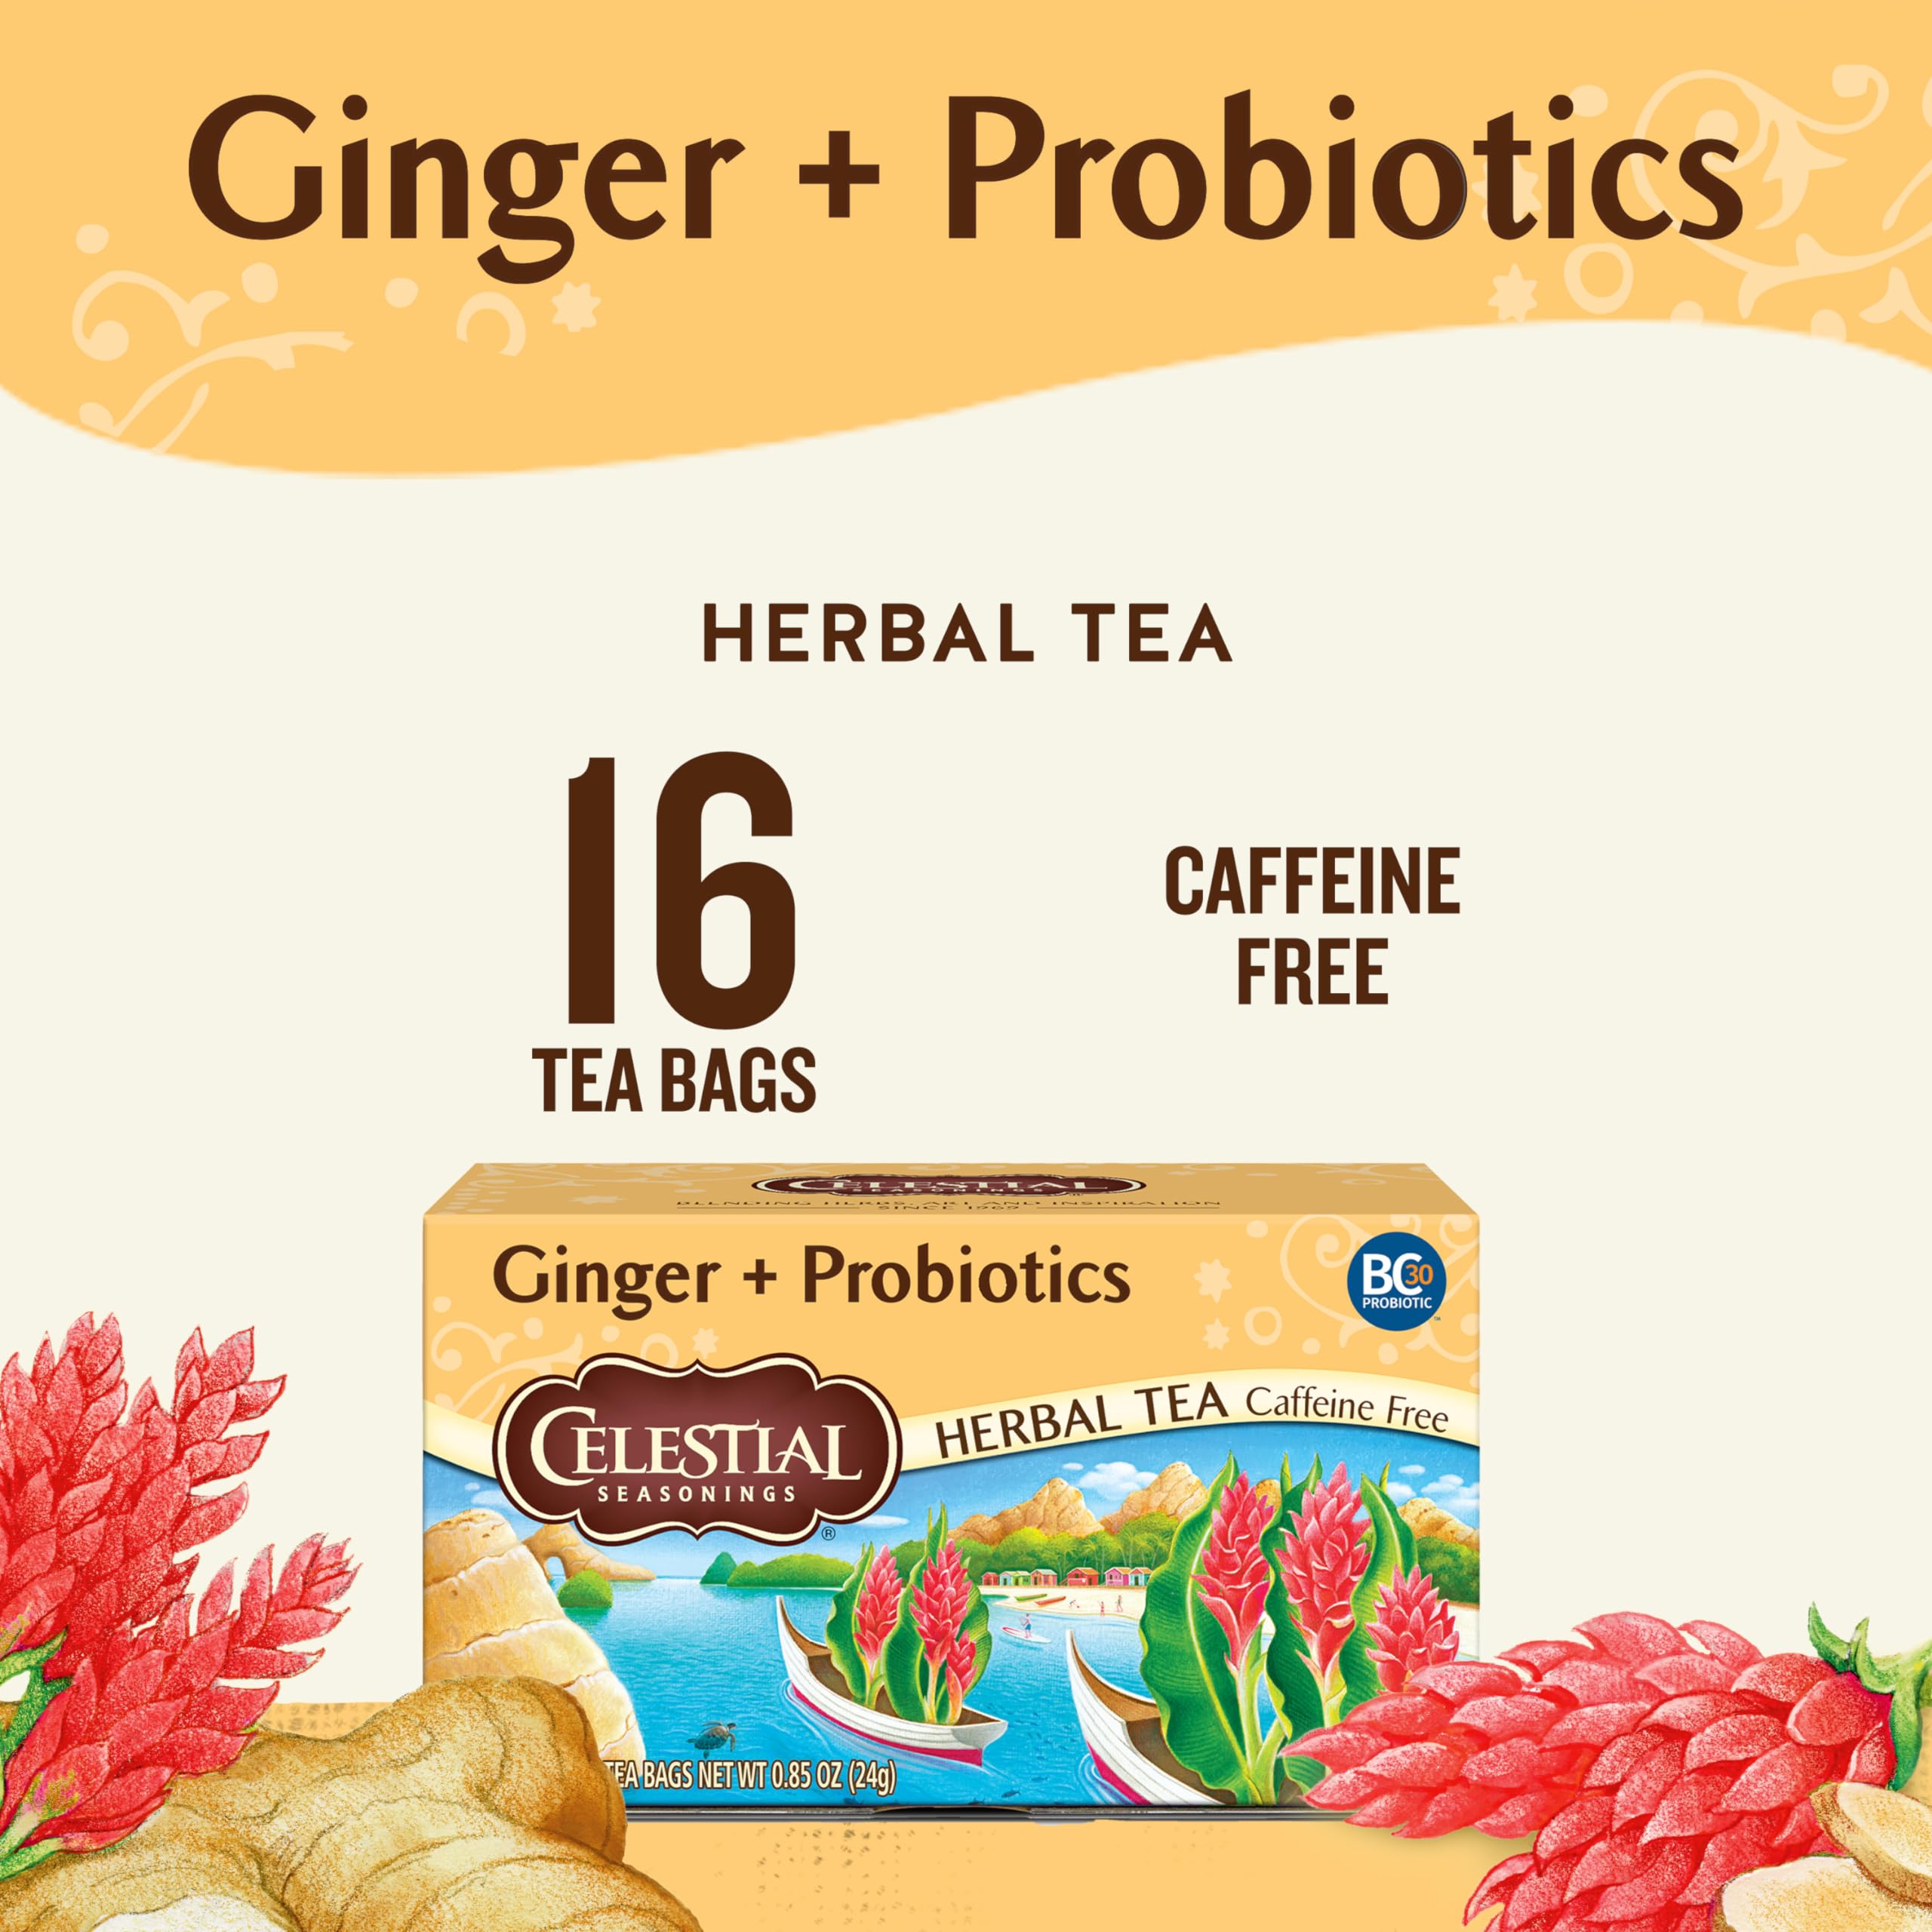 Celestial Seasonings Ginger + Probiotics Herbal Tea, Caffeine Free, 16 Tea Bags Box, (Pack of 6)